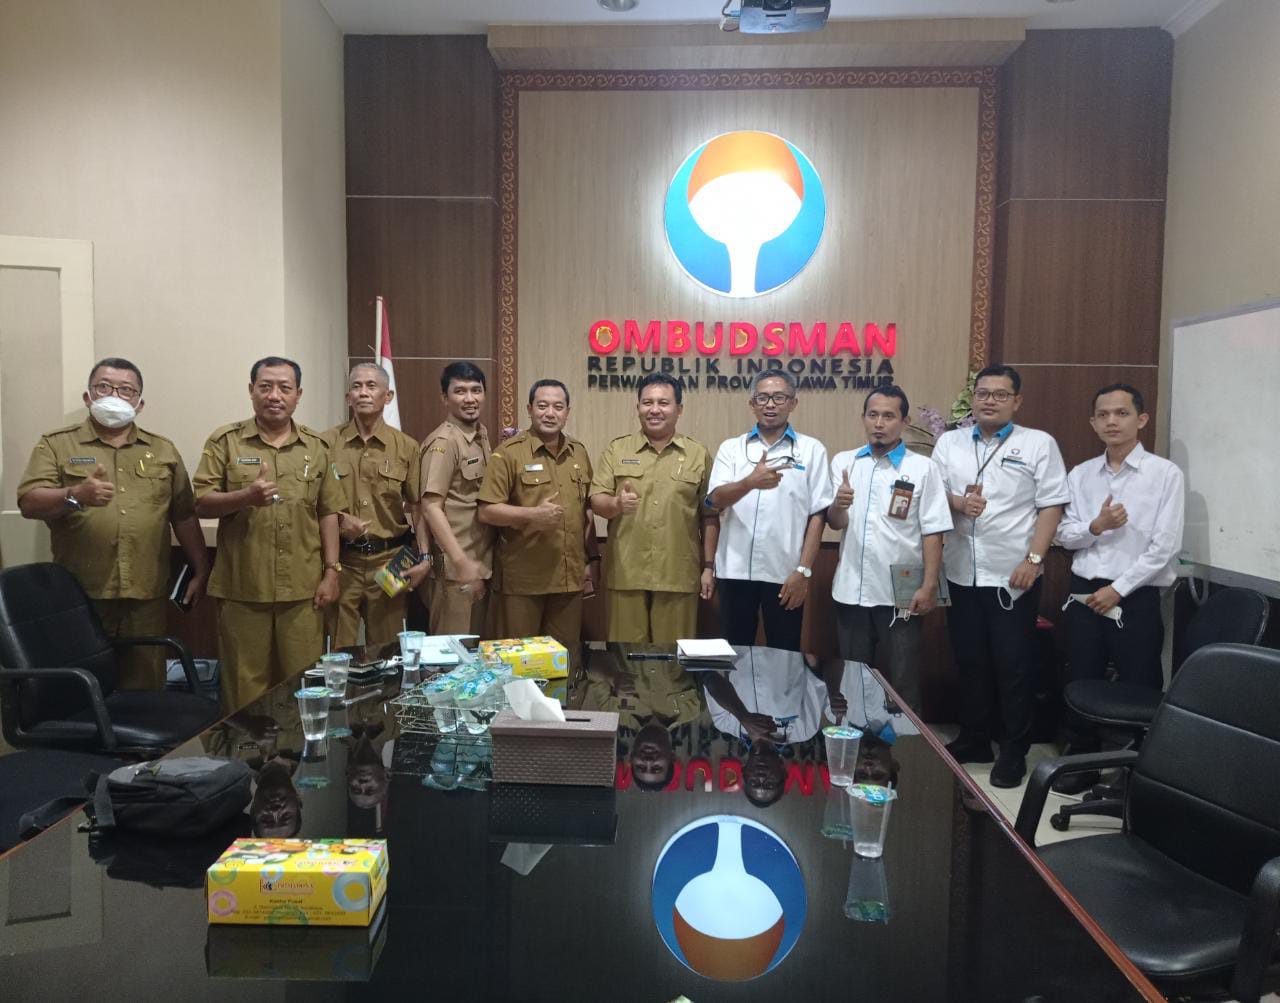 Kunjungan ke Kantor Perwakilan Ombudsman RI wilayah Provinsi Jawa Timur